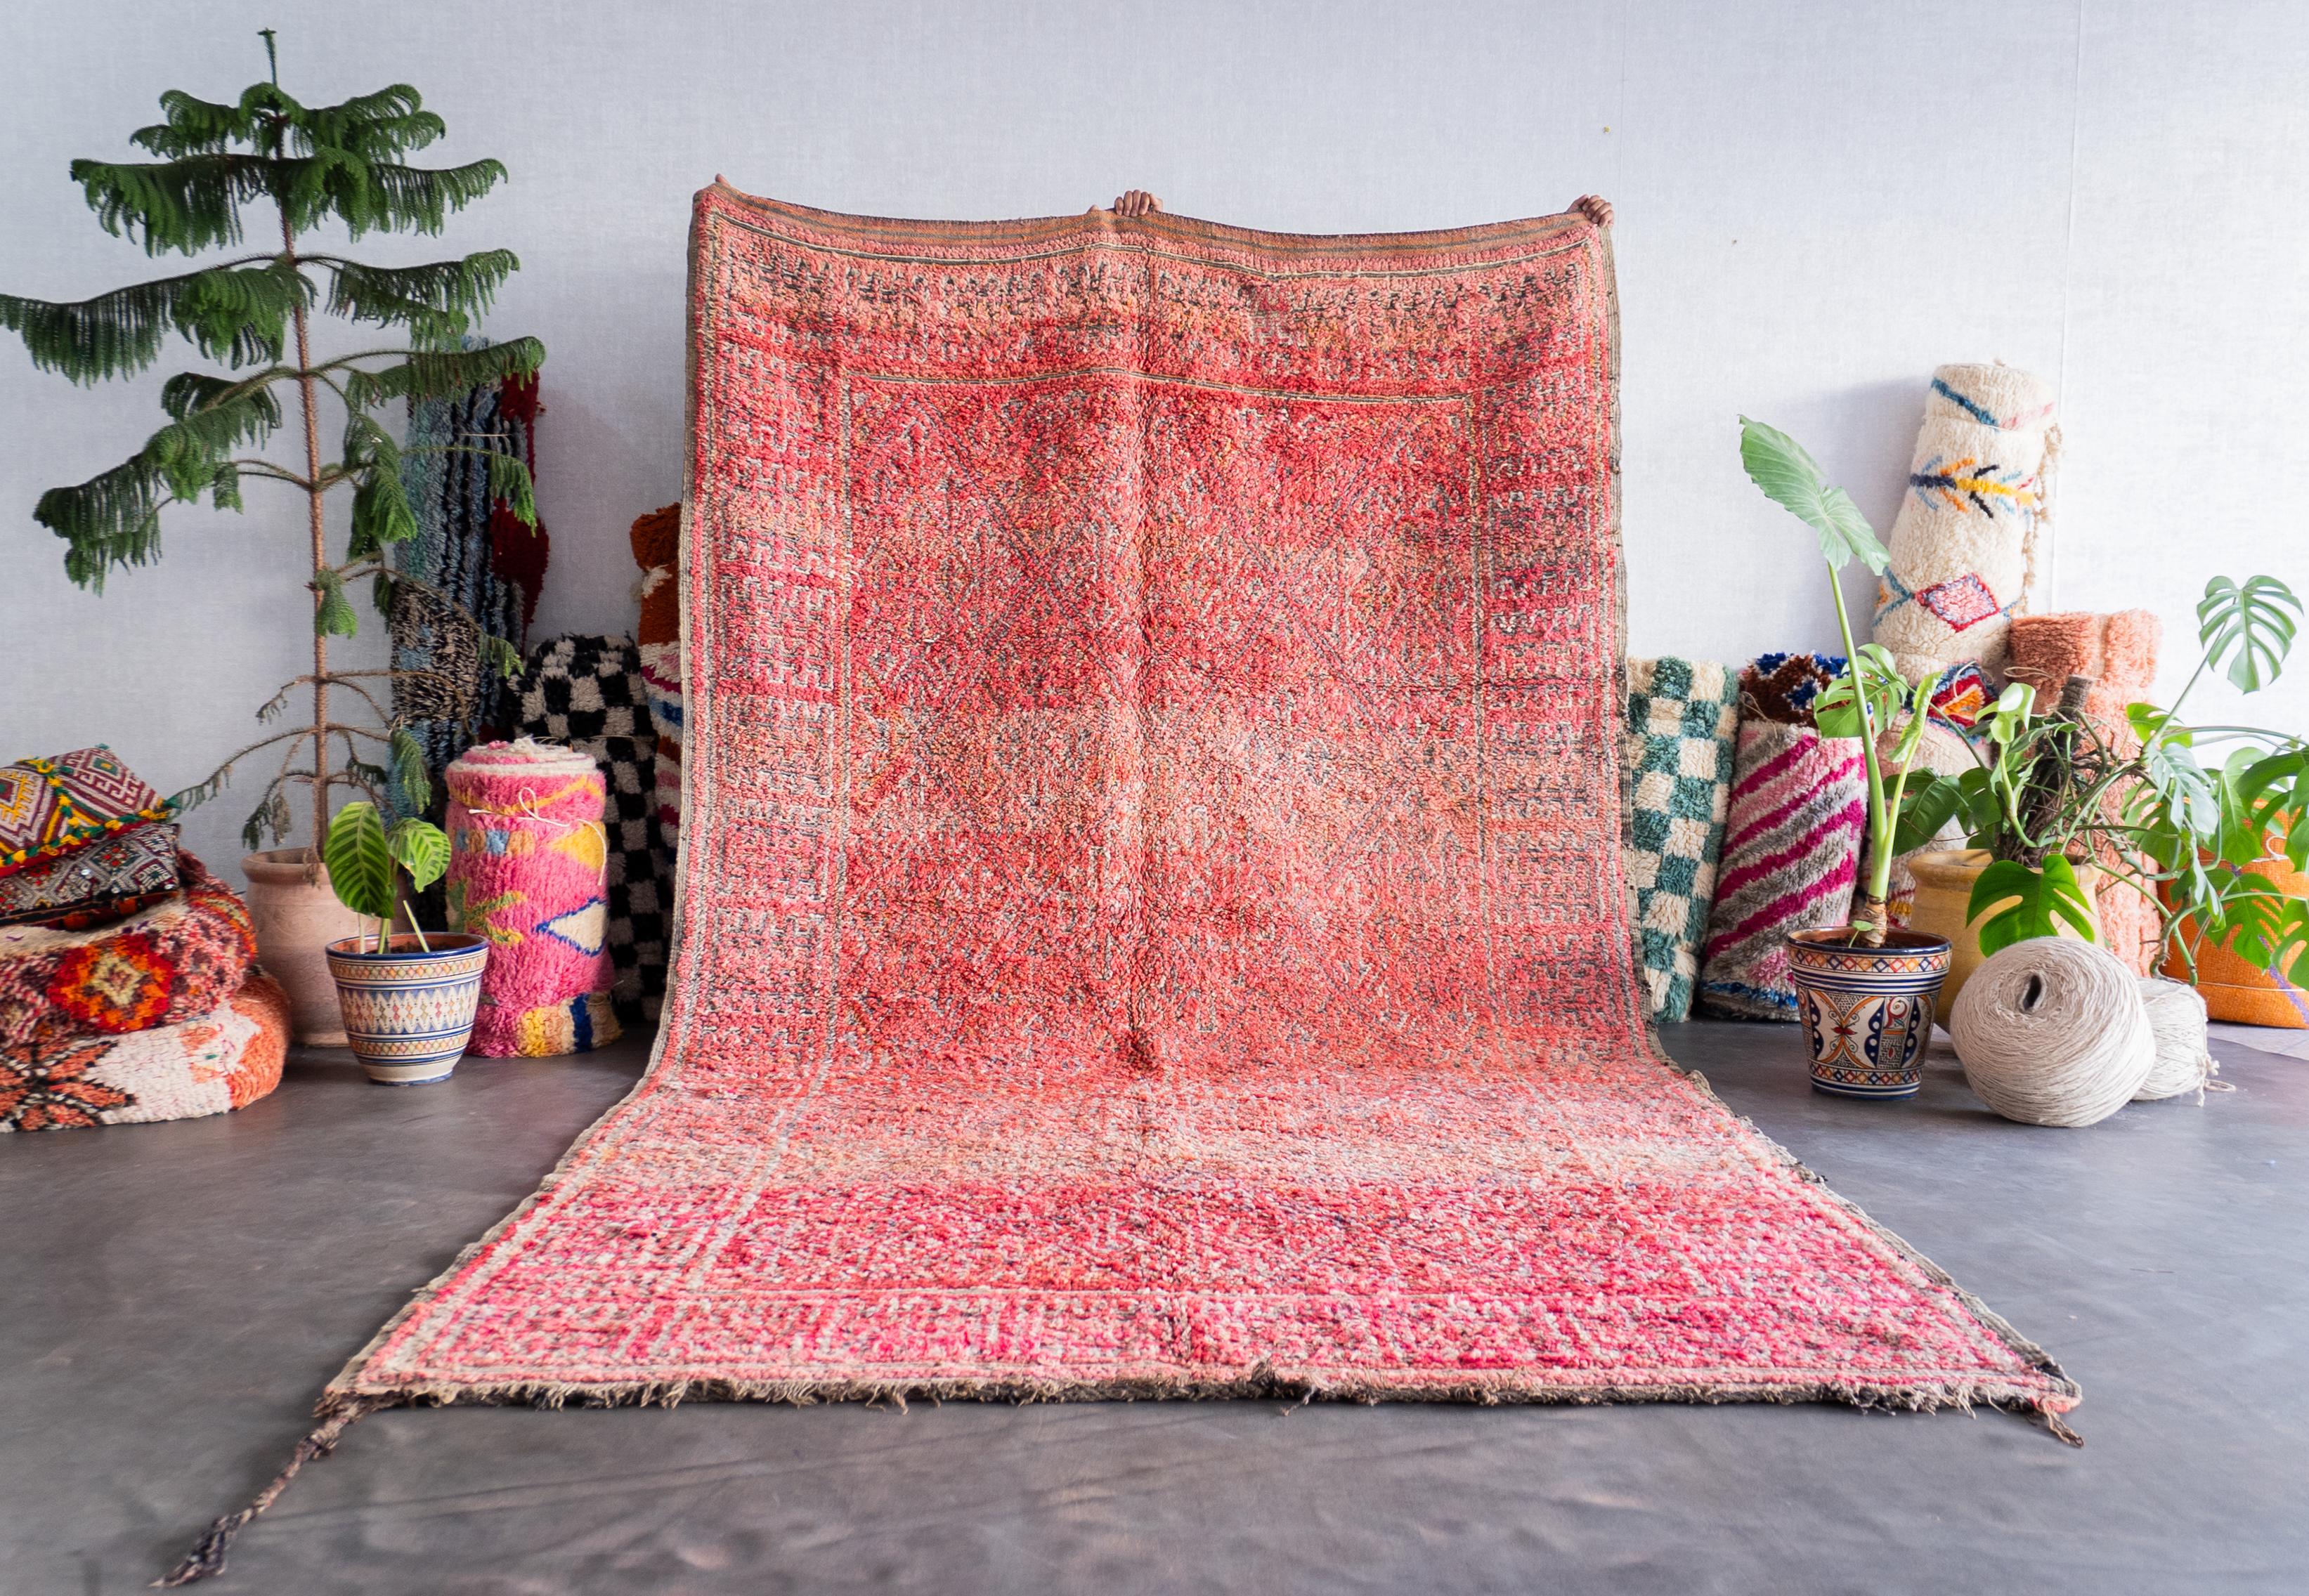 Entdecken Sie das reiche Erbe, das in unseren marokkanischen Vintage-Teppich eingewoben ist. Jeder Berberteppich wird von erfahrenen Kunsthandwerkern mit bewährten Techniken handgefertigt und ist ein einzigartiges Zeugnis der marokkanischen Kultur.